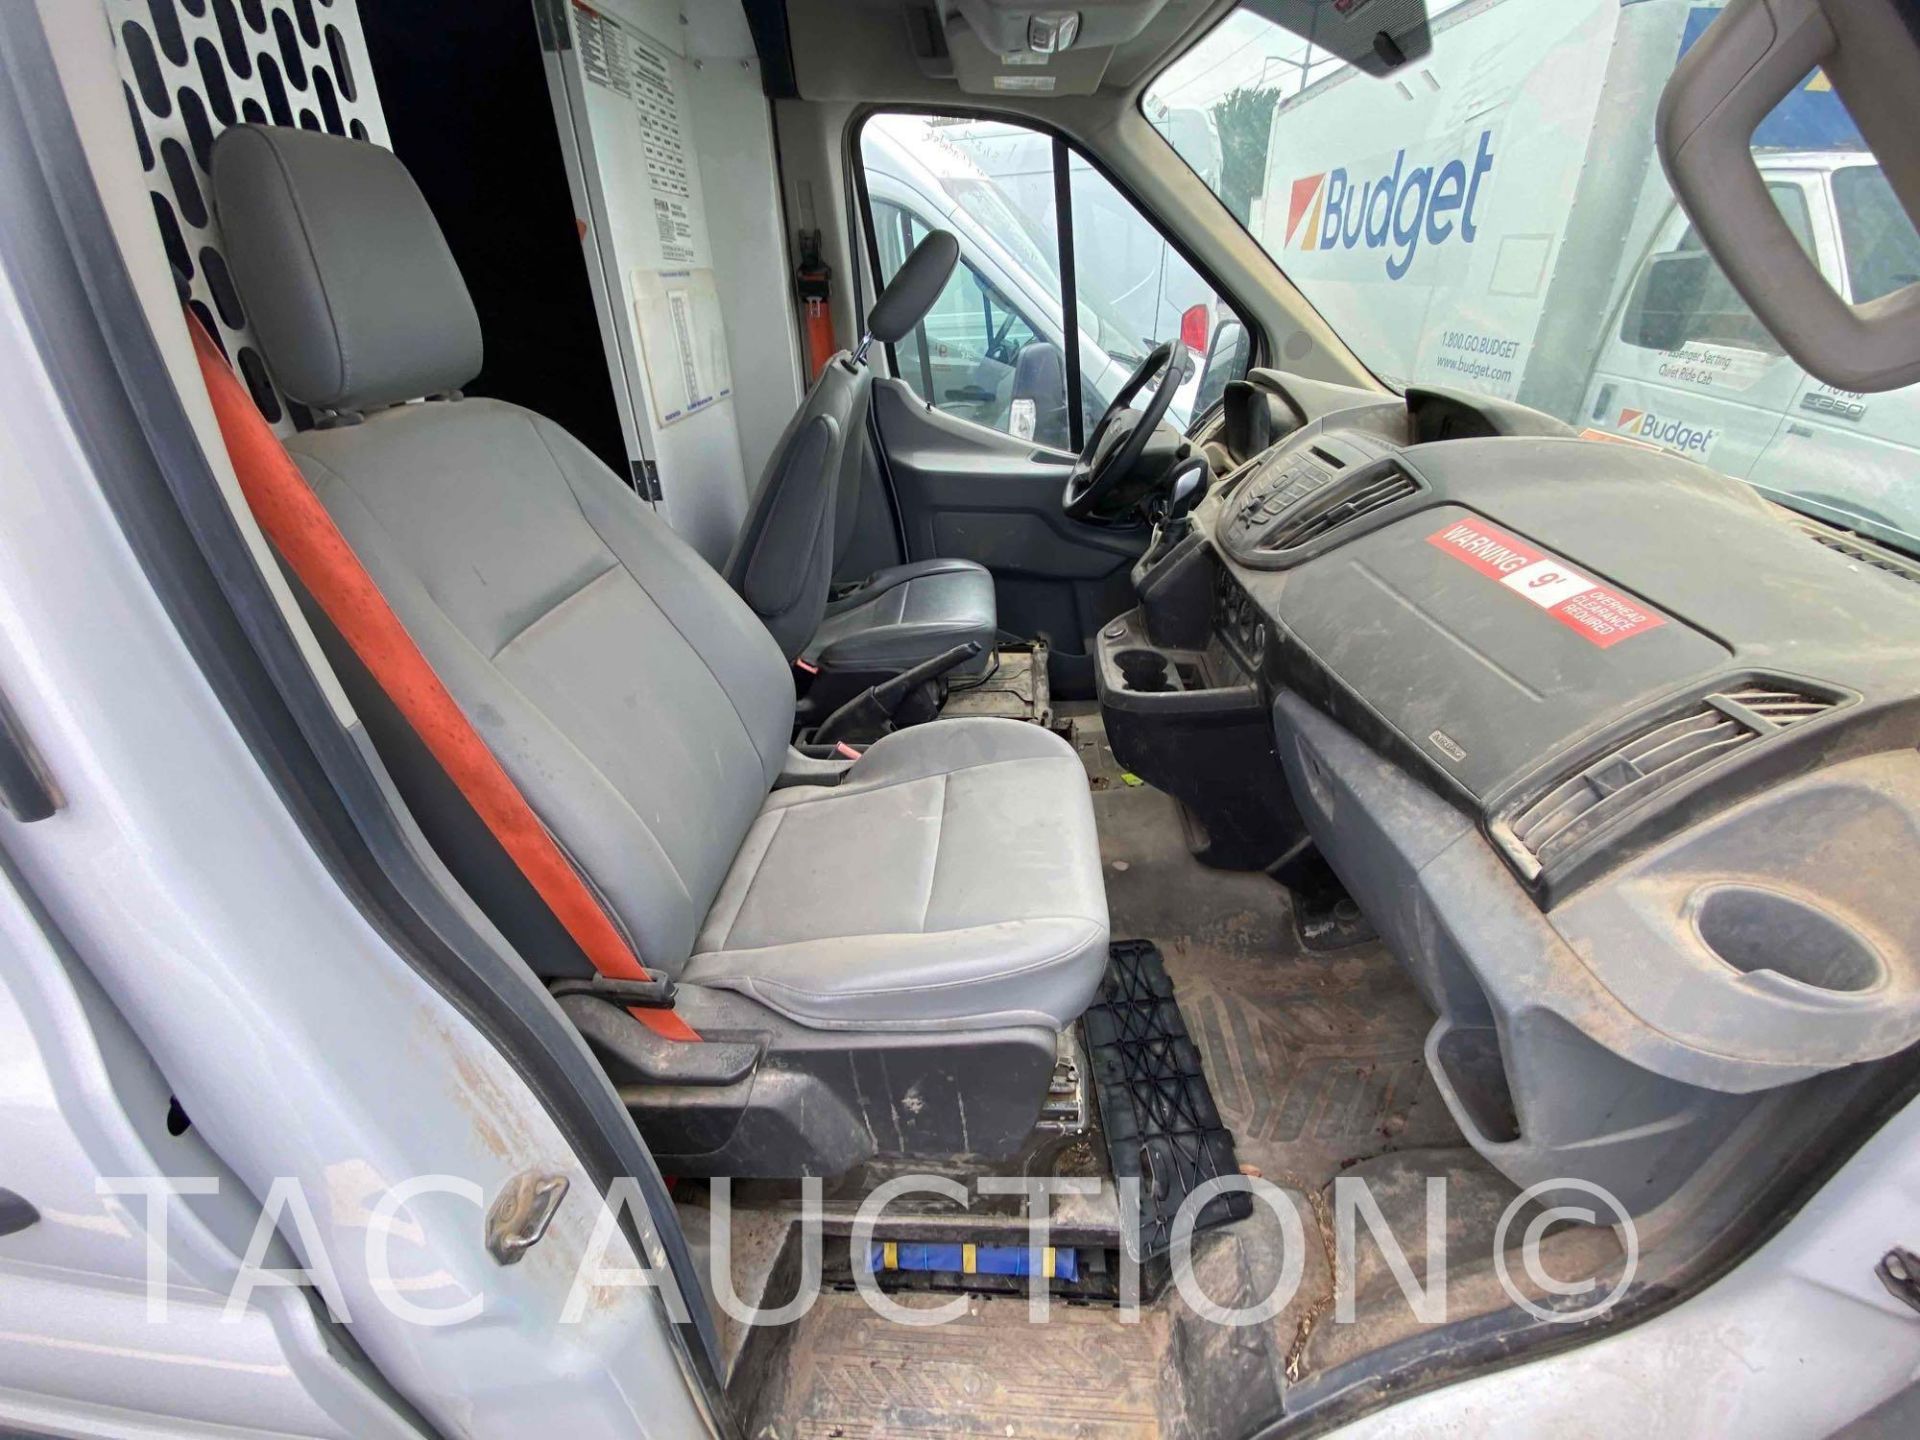 2019 Ford Transit 150 Cargo Van - Image 22 of 43